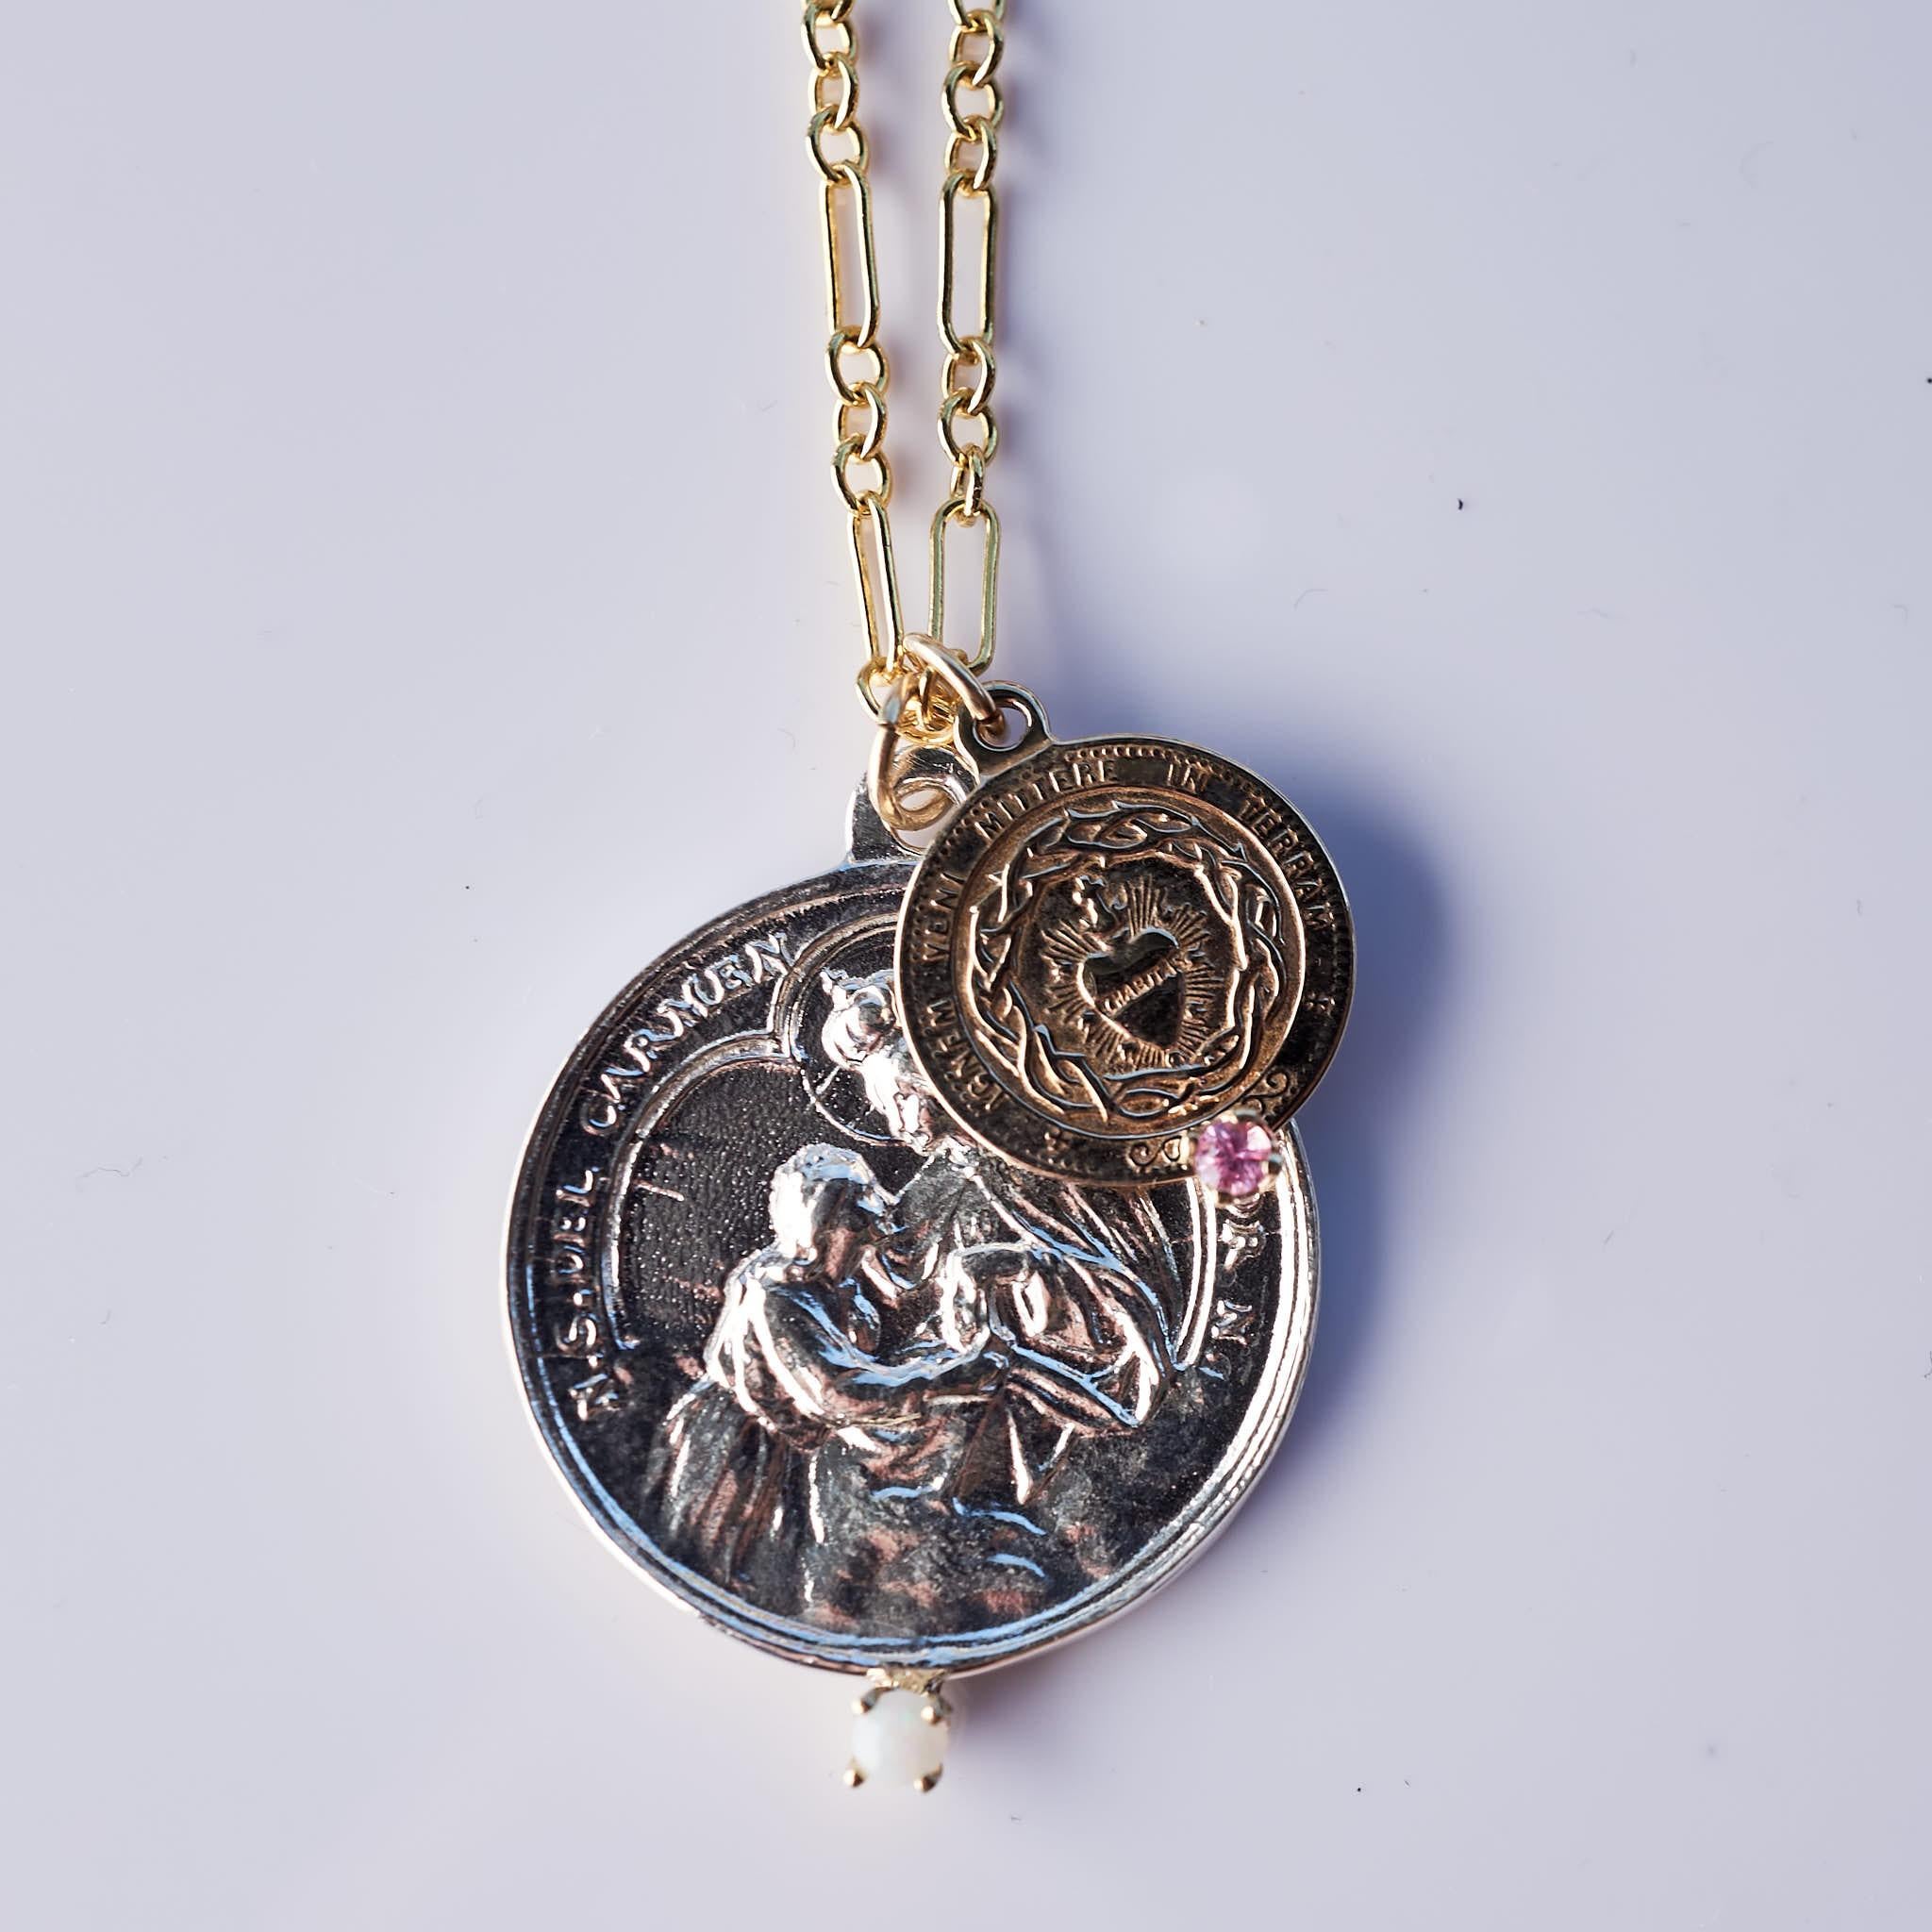 Medaillenkette mit zwei Medaillen Jungfrau Maria in Silber und Herz-Jesu in Bronze, besetzt mit Opal und rosa Saphir in 14k Goldzacken, Halskette kann in verschiedenen Längen verwendet werden  24